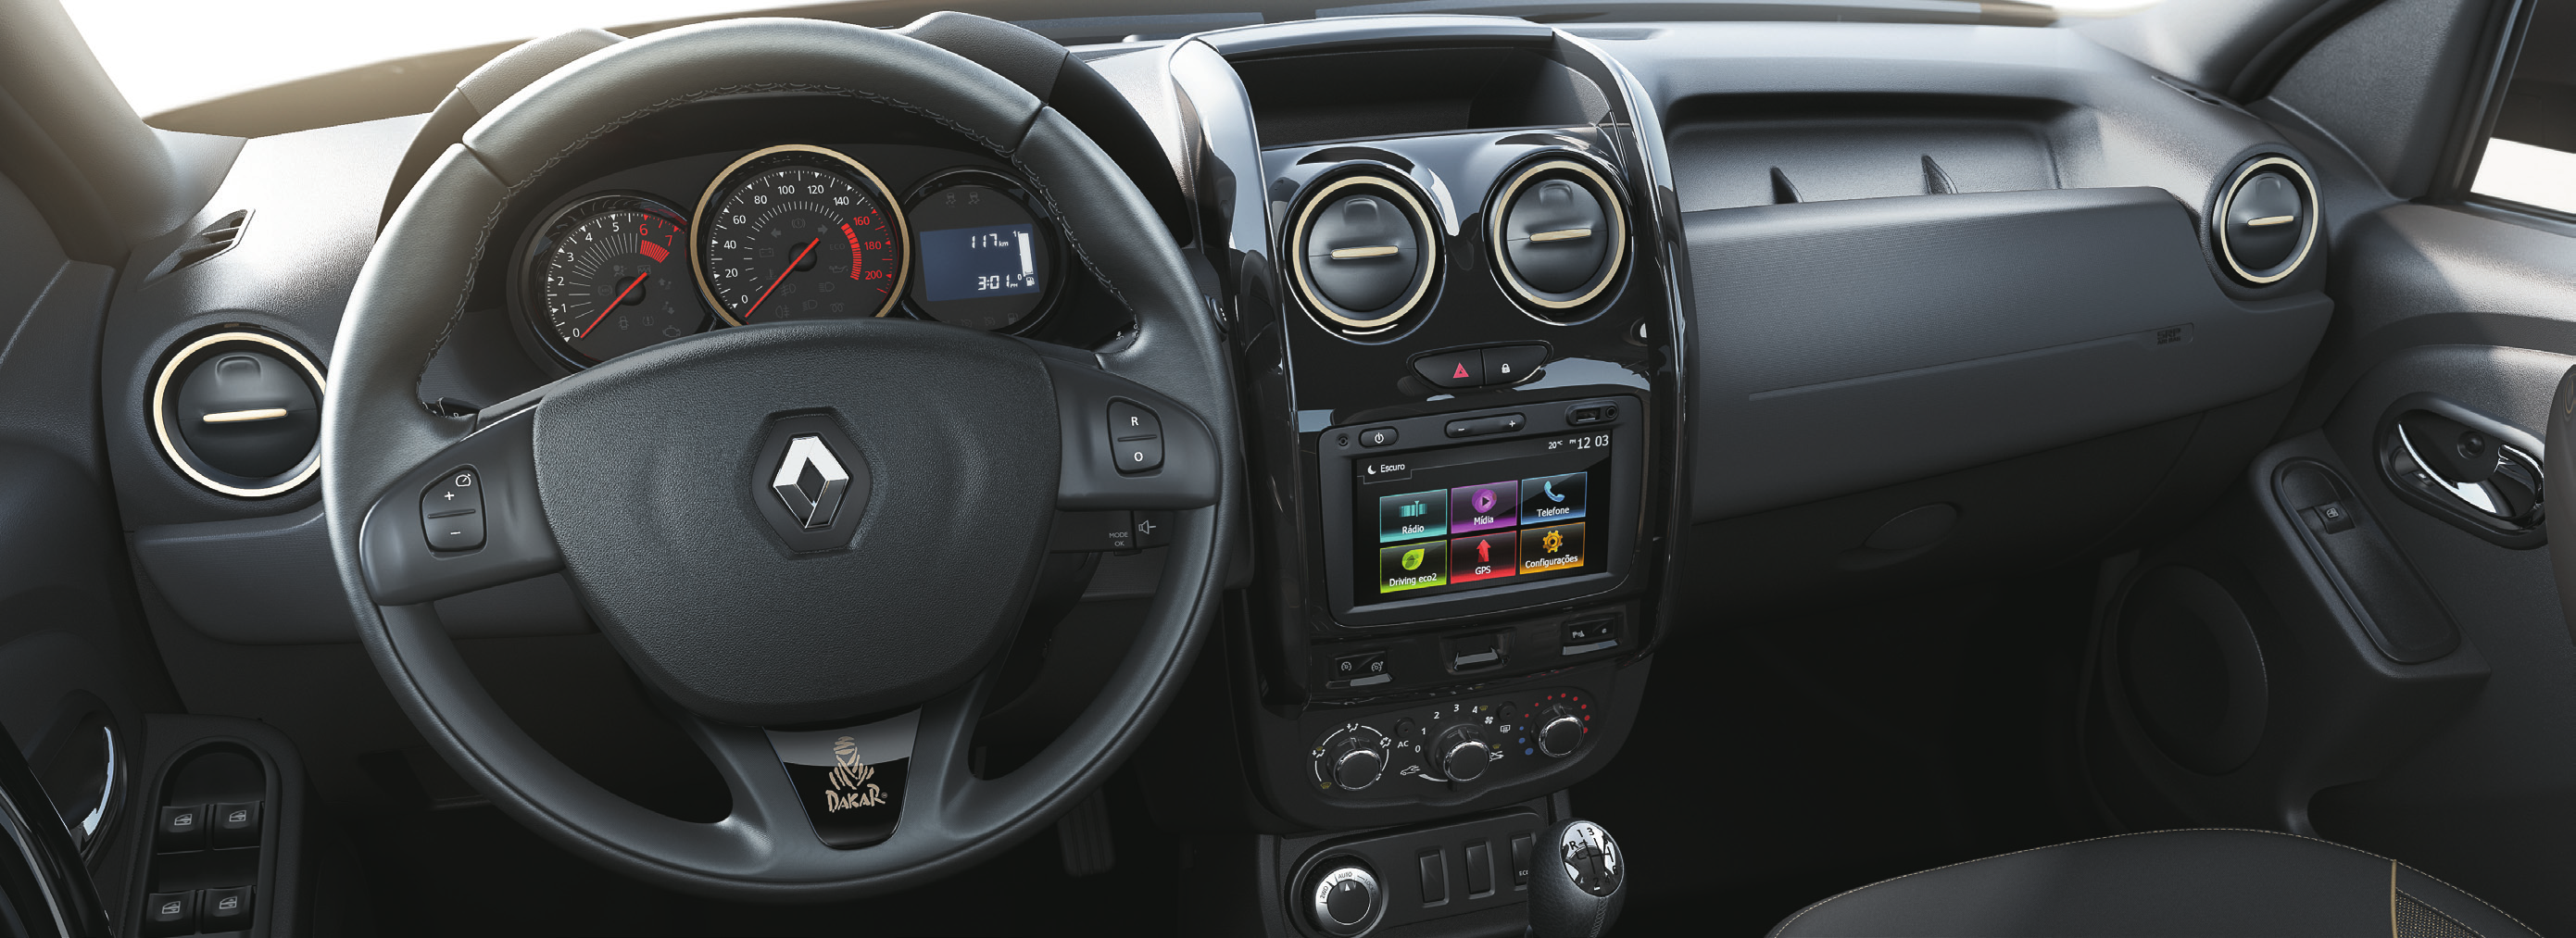 Conforto e tecnologia para ultrapassar obstáculos Gostar de aventura não significa abrir mão do conforto. Por isso, o interior do Renault Duster Dakar oferece espaço de sobra para até 5 adultos.